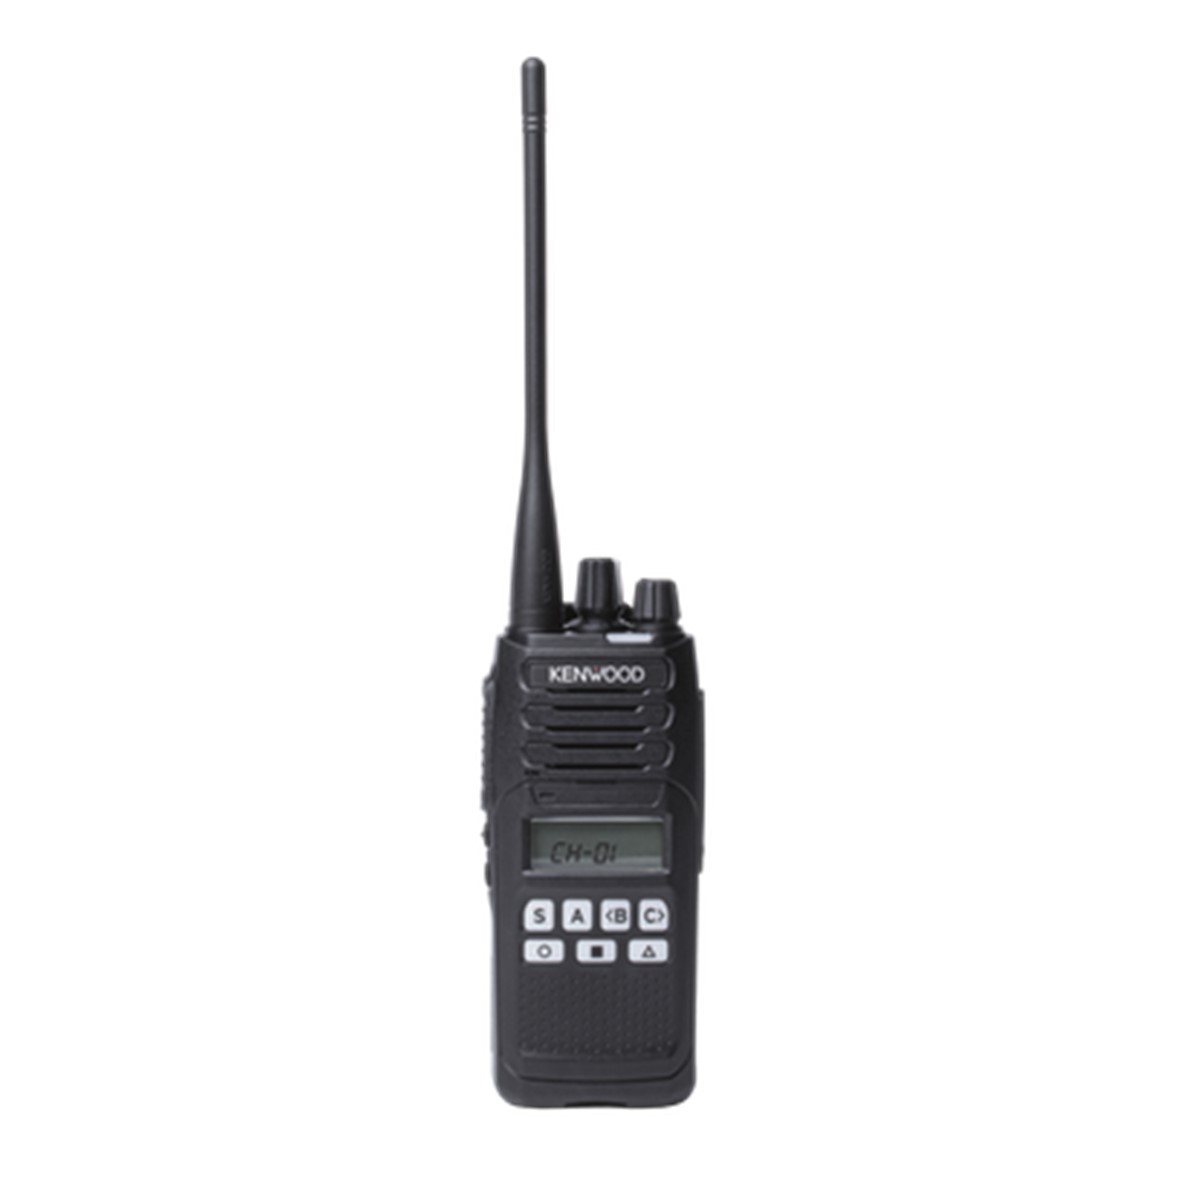 Radio KENWOOD NX-1300 Digital UHF 450-520 MHz con pantalla y teclado limitado